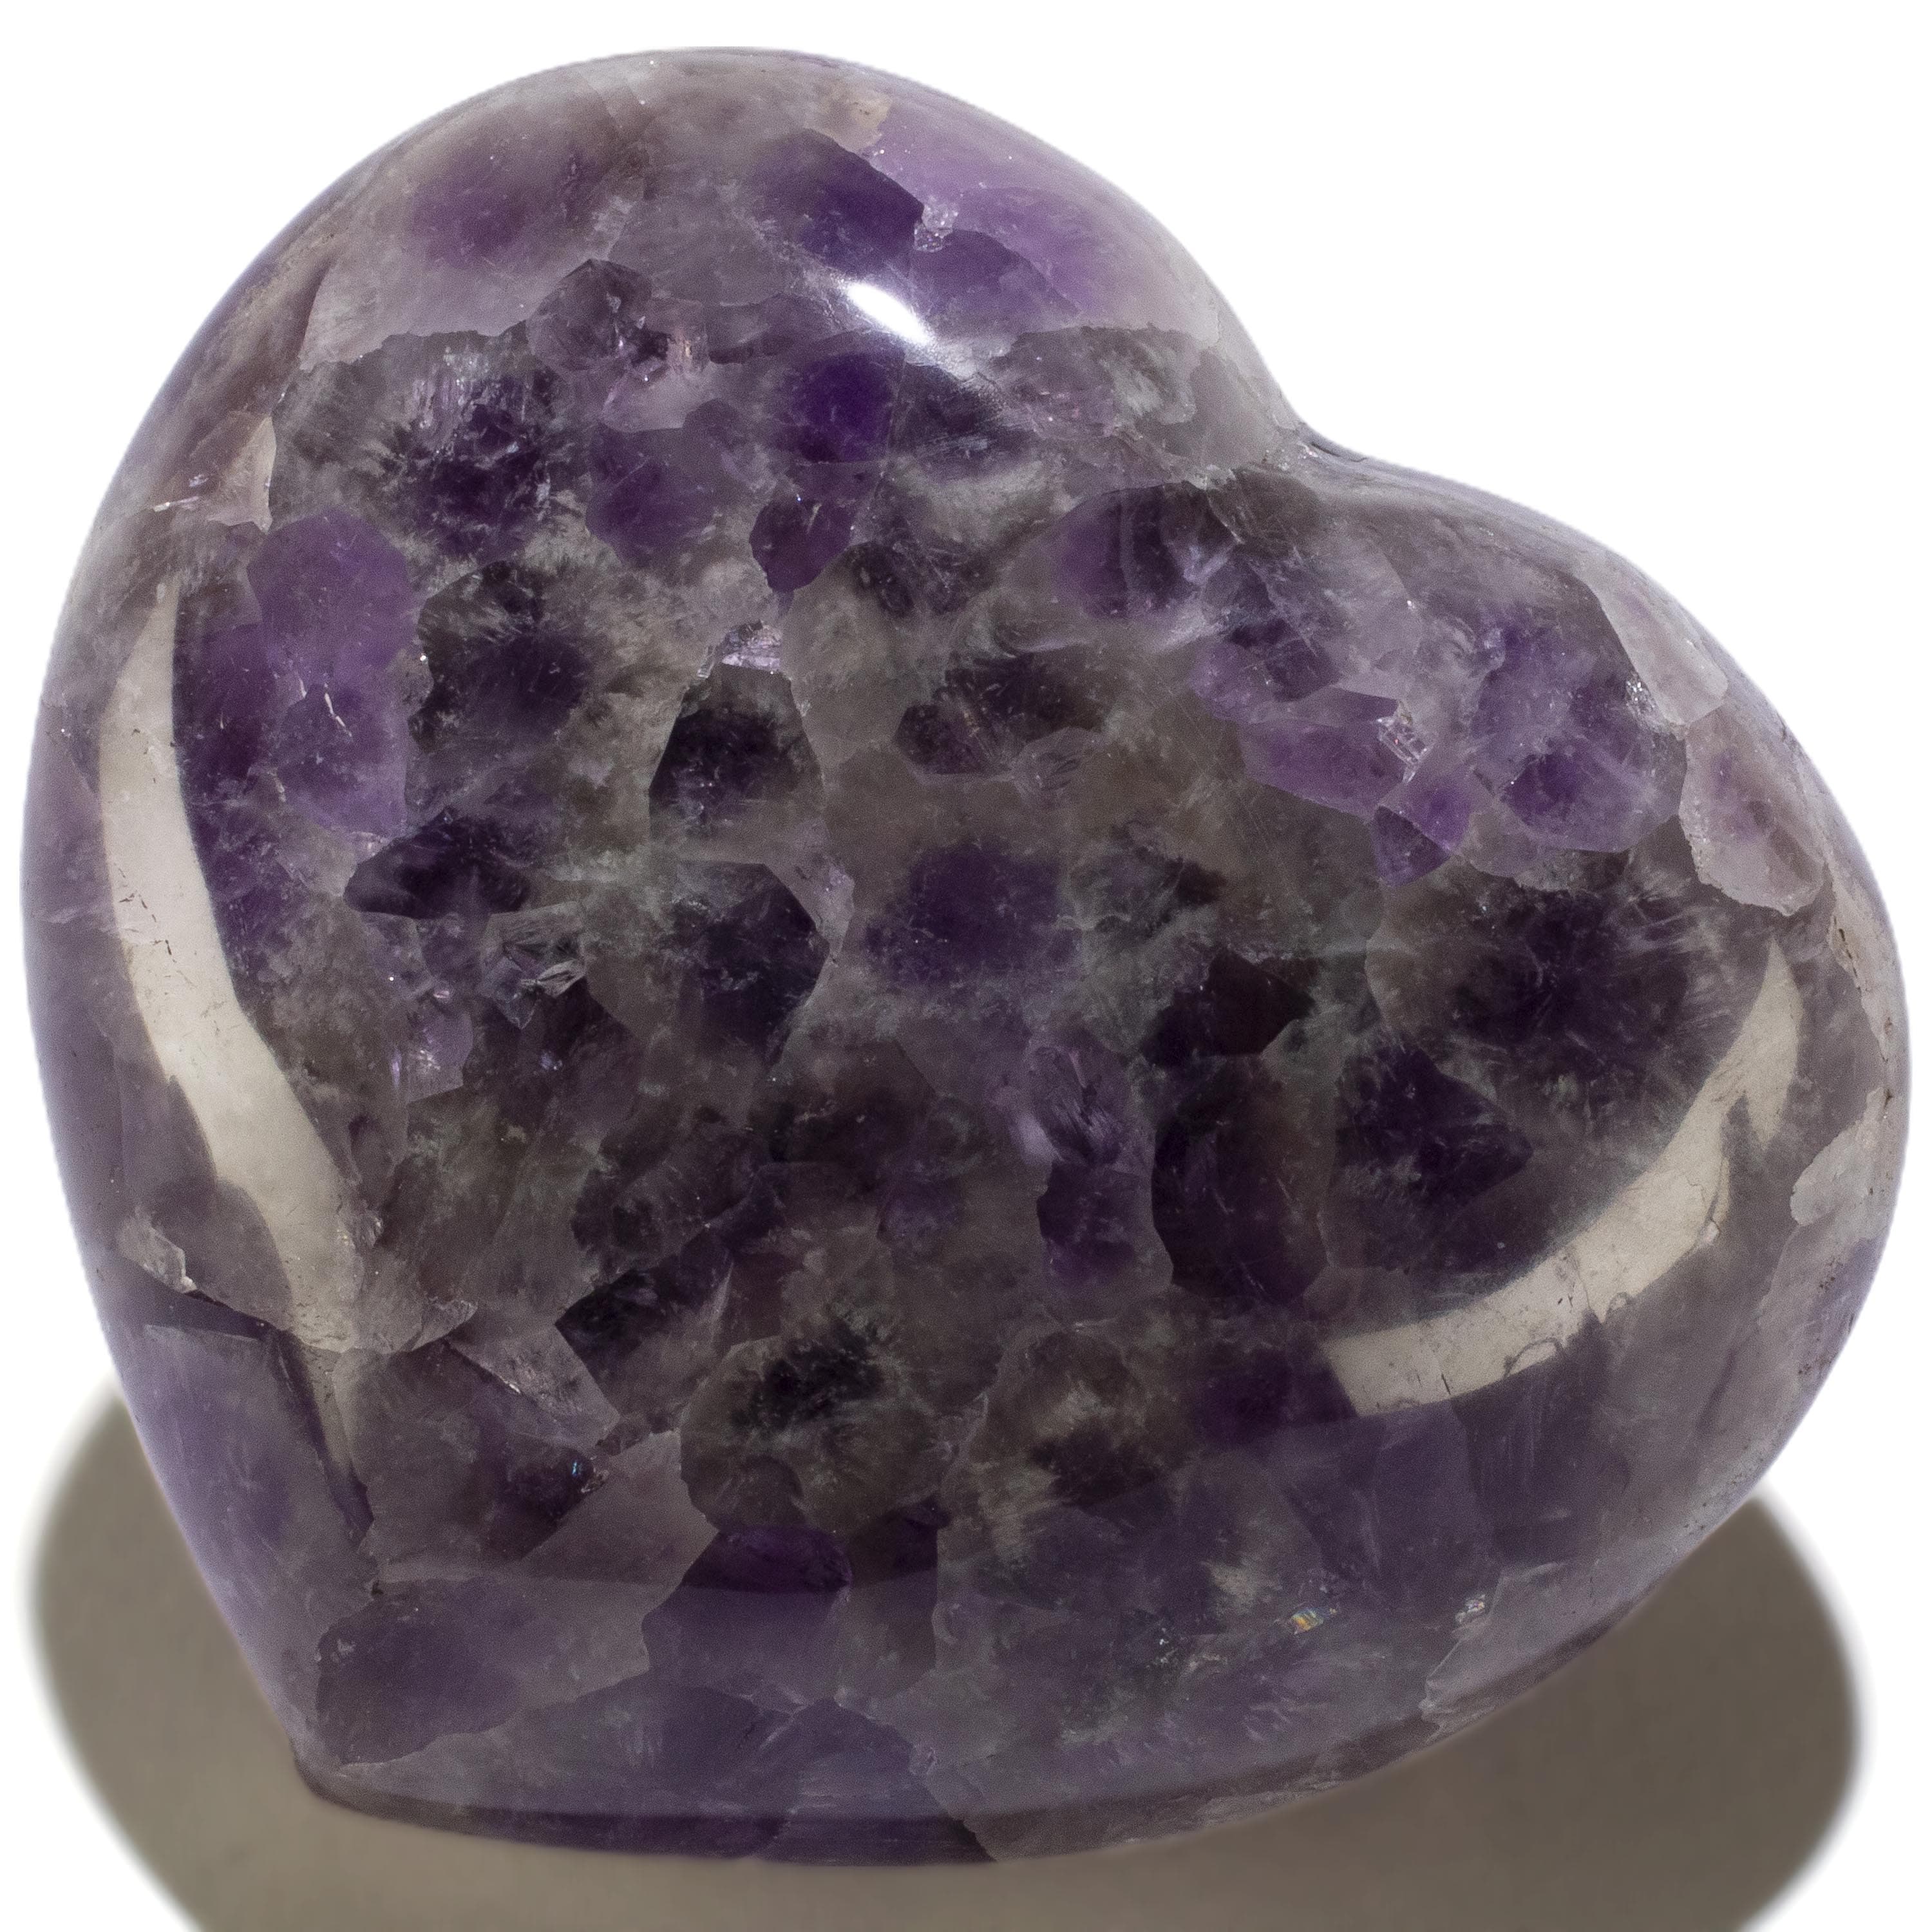 KALIFANO Amethyst Amethyst Gemstone Heart Carving 285g / 3.5in. GH300-AM